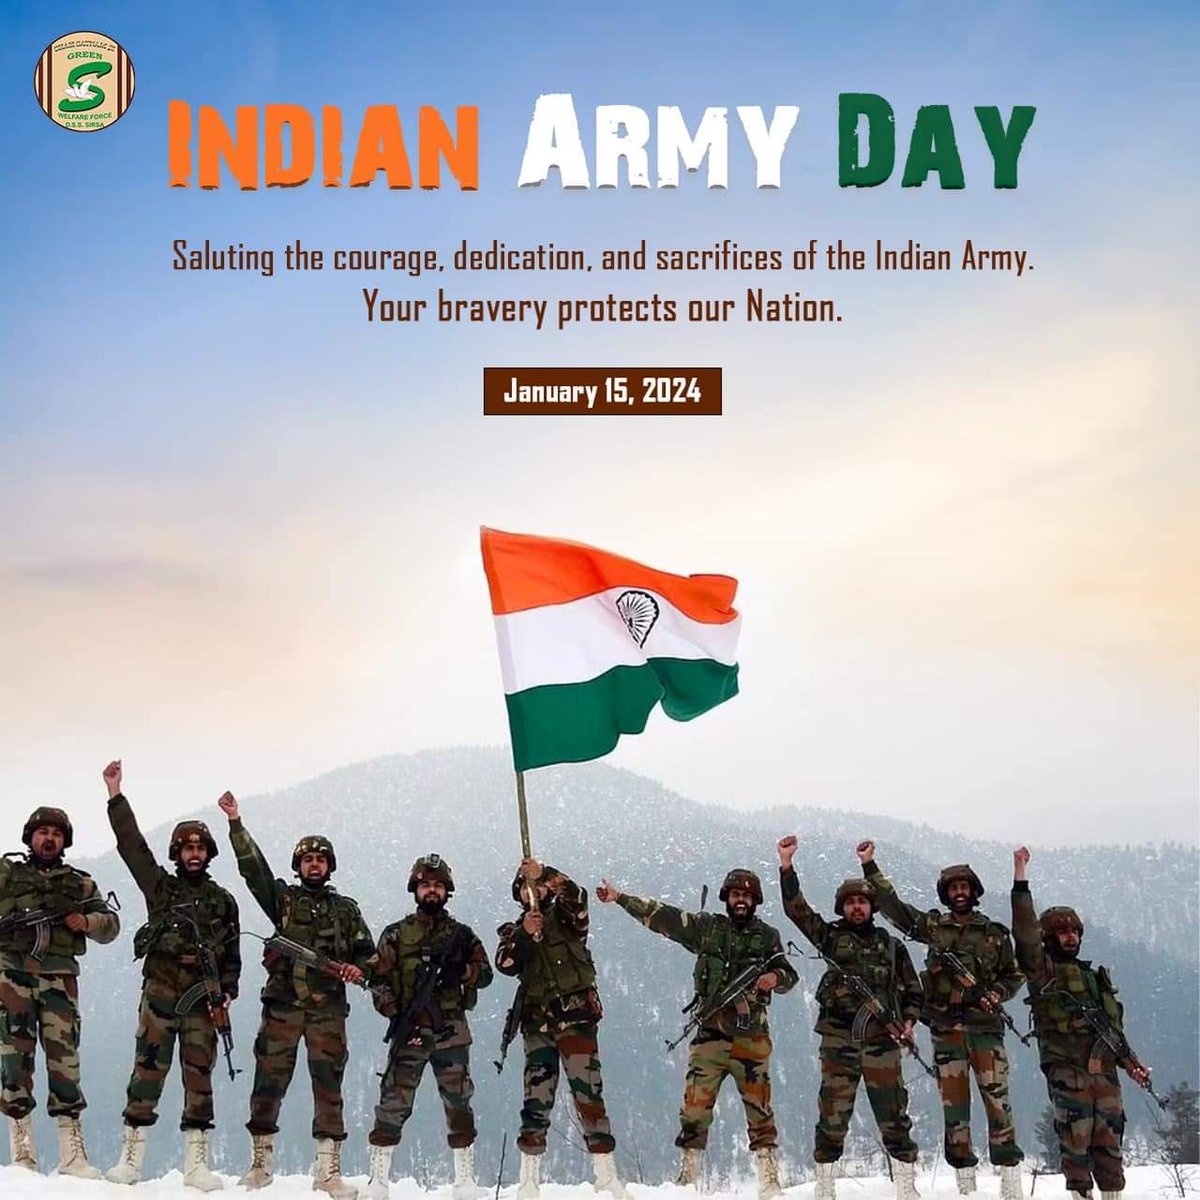 थल सेना दिवस पर अदम्य साहस बहादुरी और पराक्रम की परिचायक भारतीय थल सेना के सैनिकों को मेरा सादर नमन एवं भारतीय थल सेना दिवस की हार्दिक बधाई एवं शुभकामनाएं💐🇮🇳🙏 
#थल_सेना_दिवस #IndianArmy #drpriyankamaurya